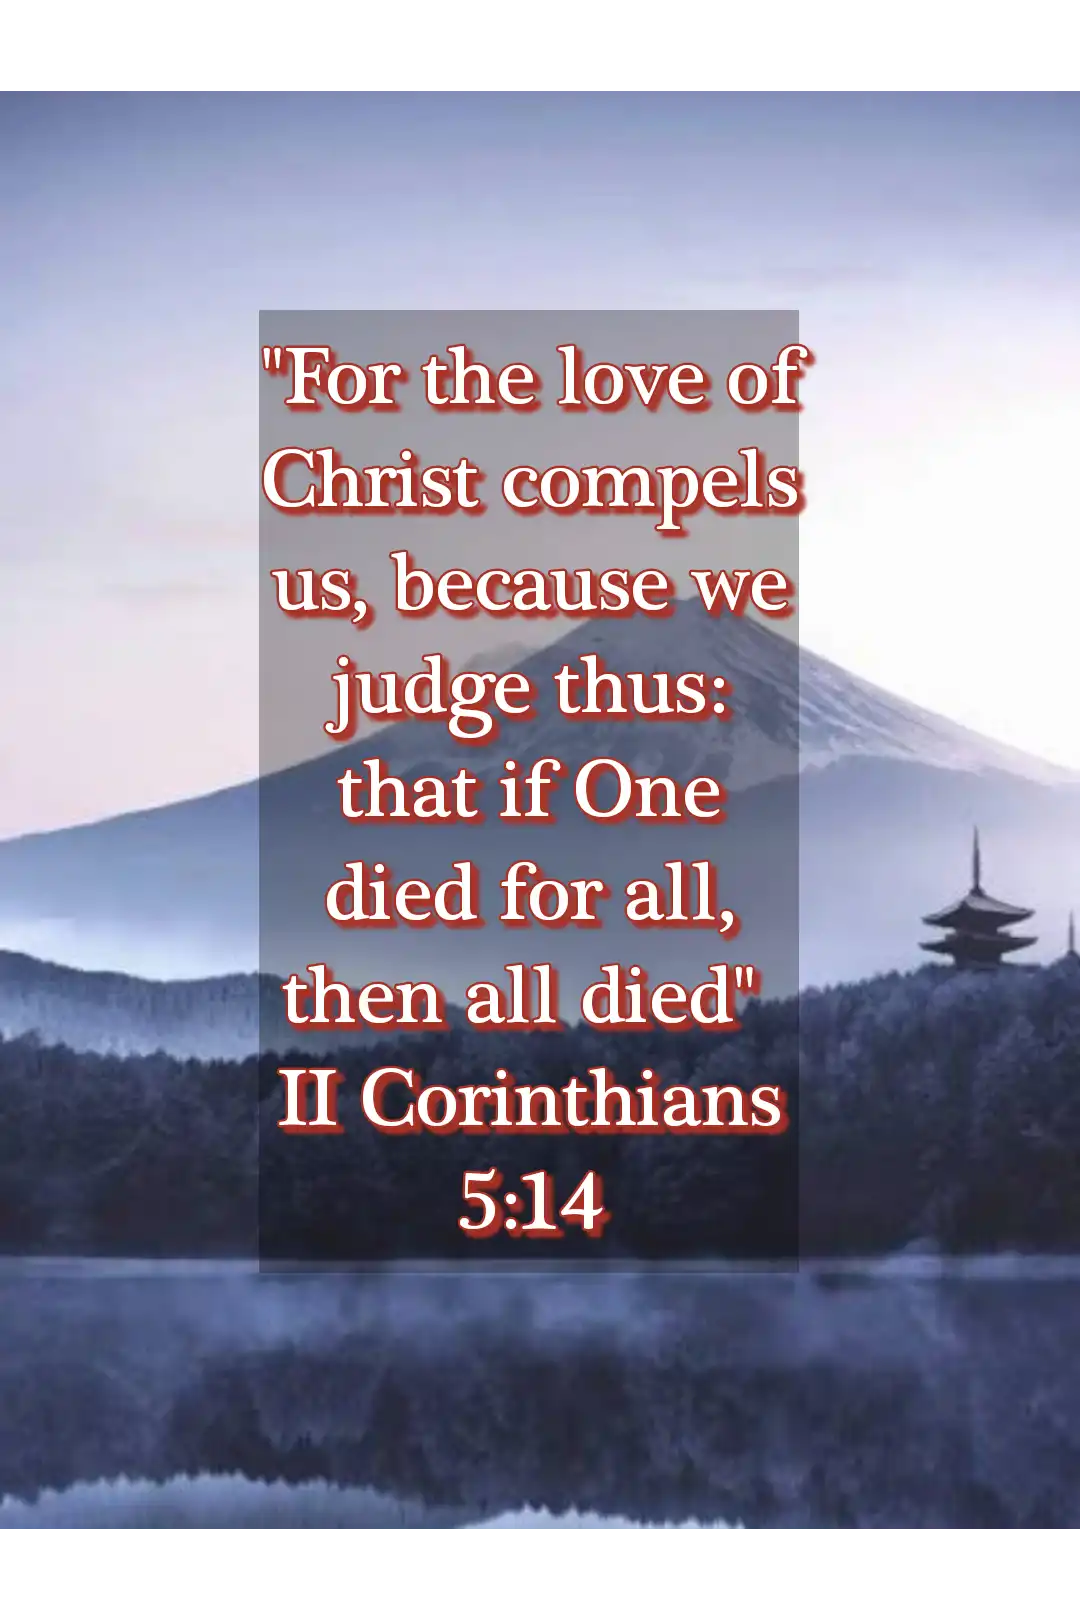 Bible verses about god’s love for us (2 Corinthians 5:14)